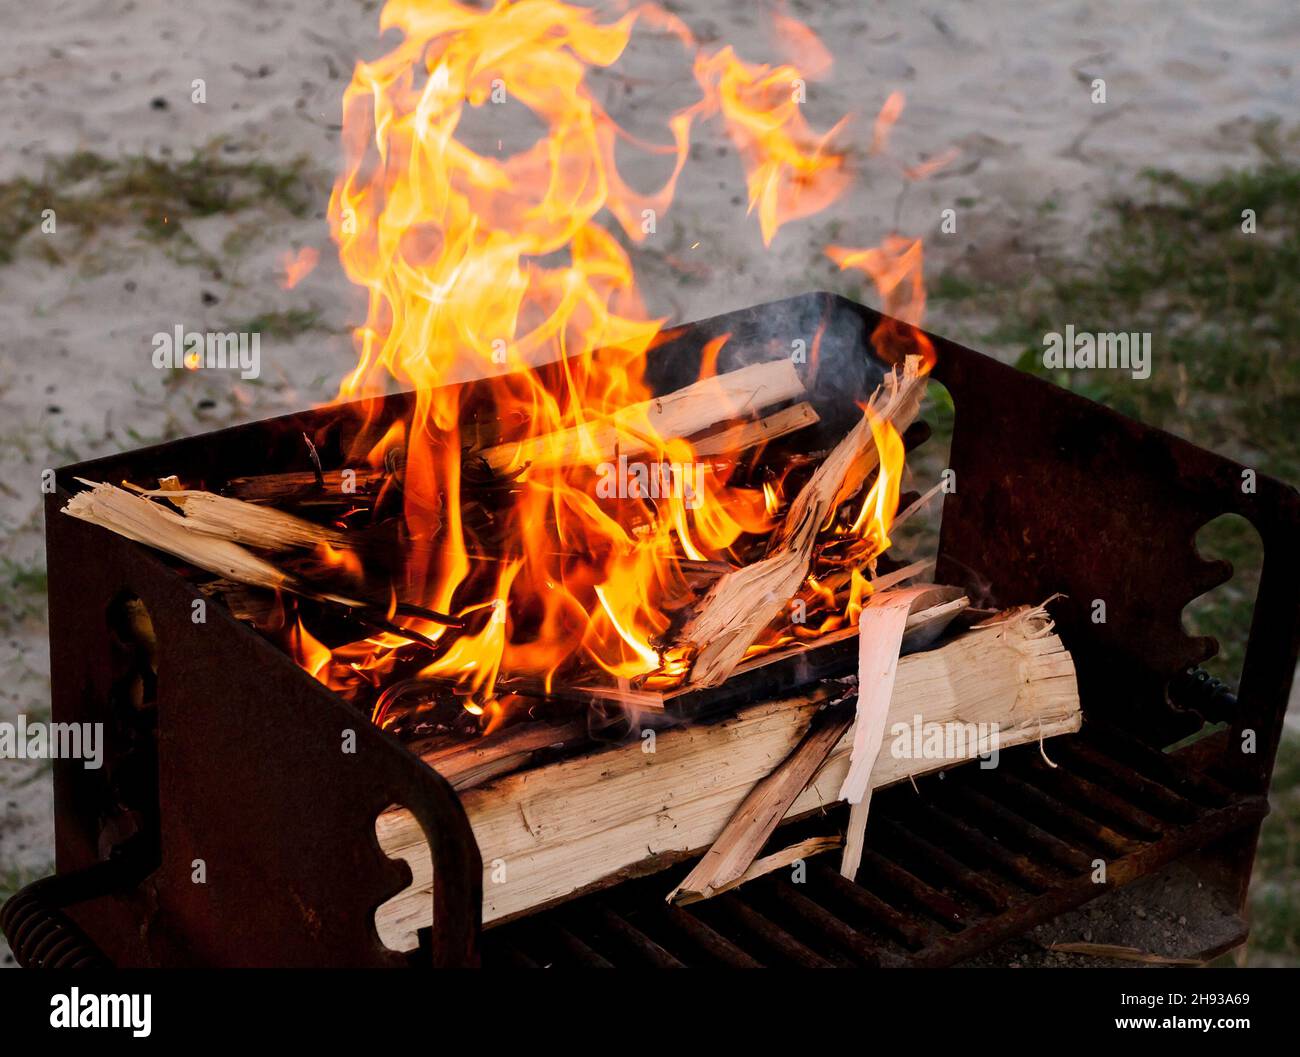 Troncos de madera quemados en un pequeño fuego construido sobre una parrilla de camping Foto de stock